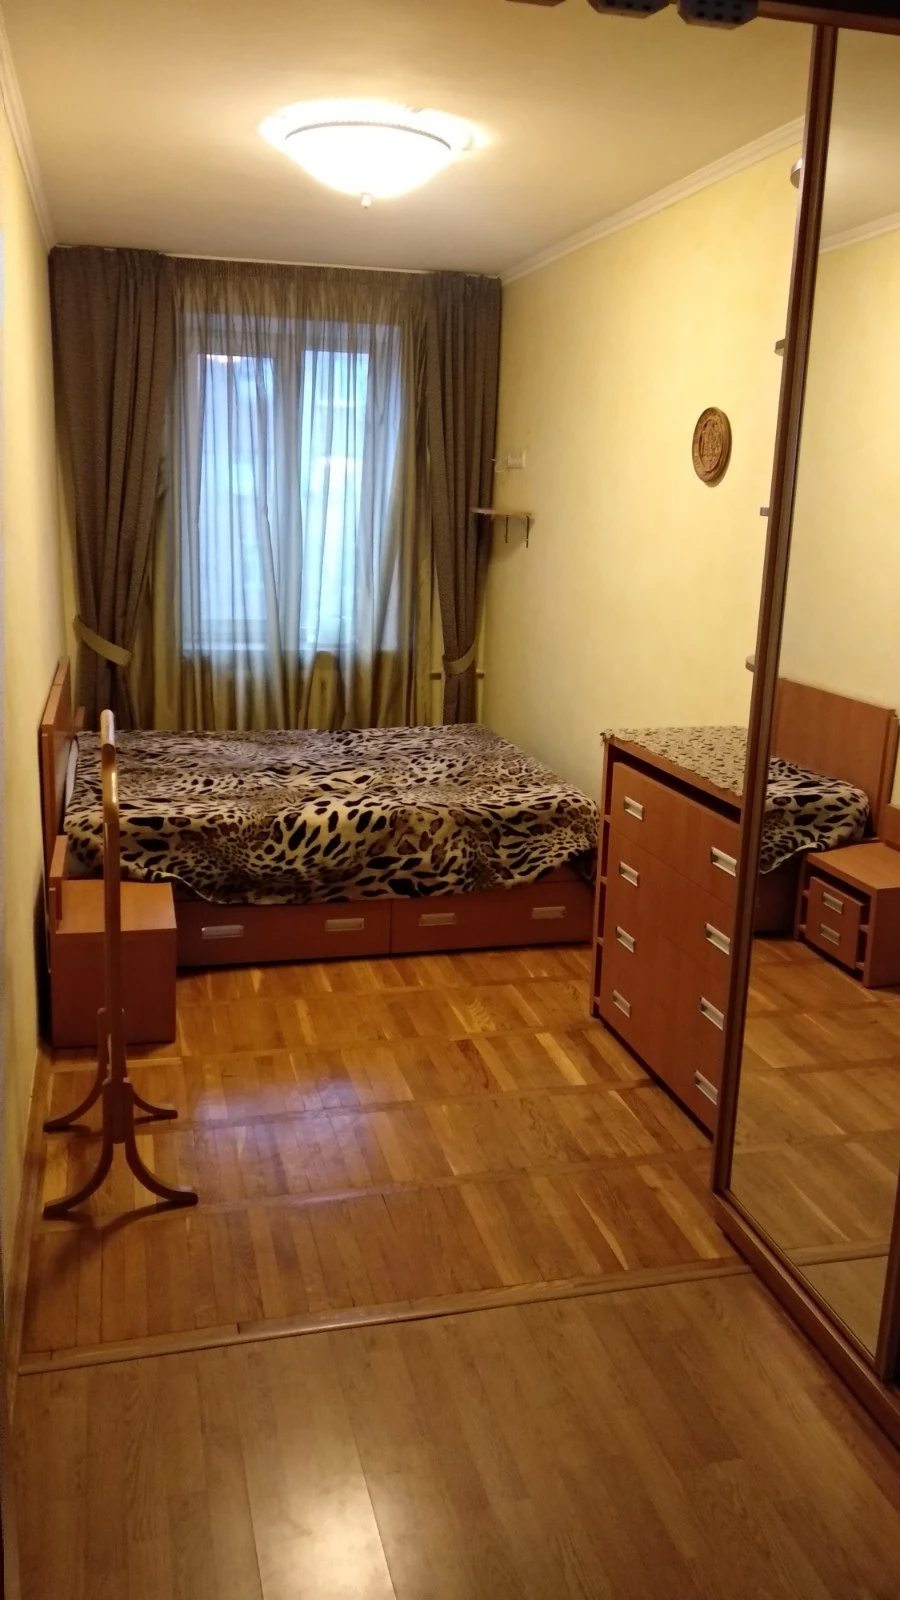 Аренда 3-х кімнатної квартири на Лук'янівці 